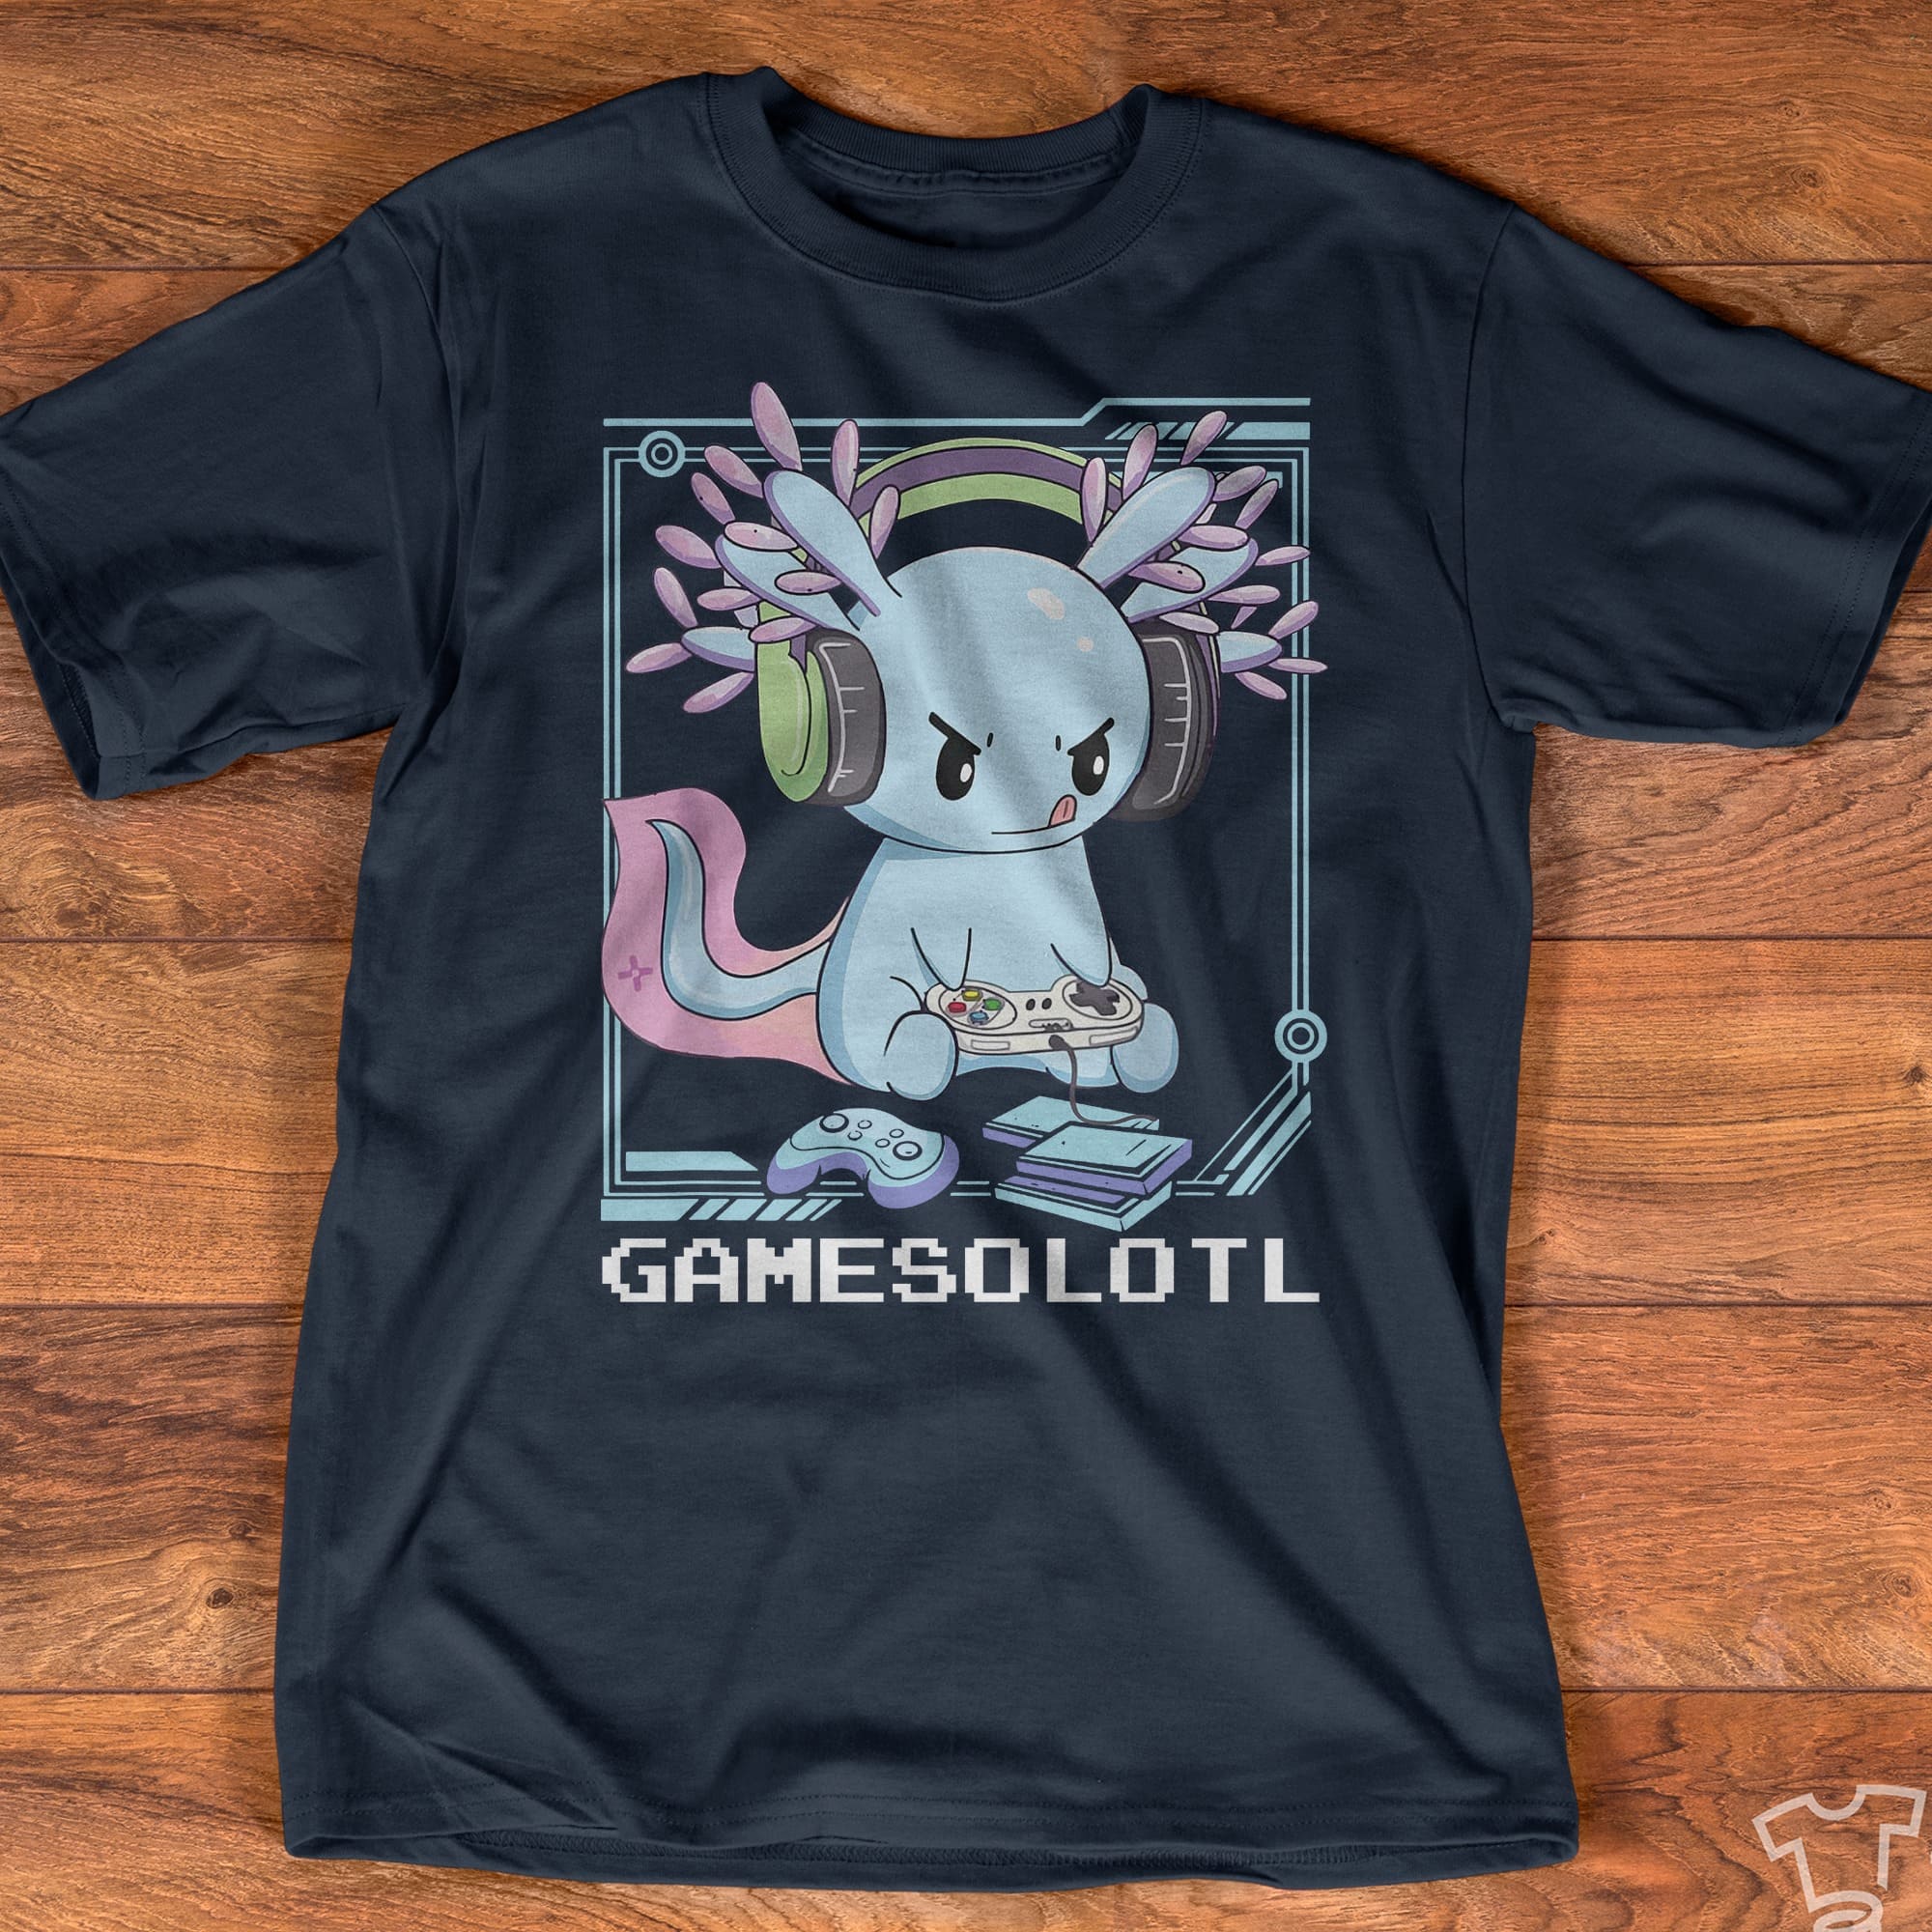 Gamesolotl T-shirt - Axolotl playing game, gaming lover